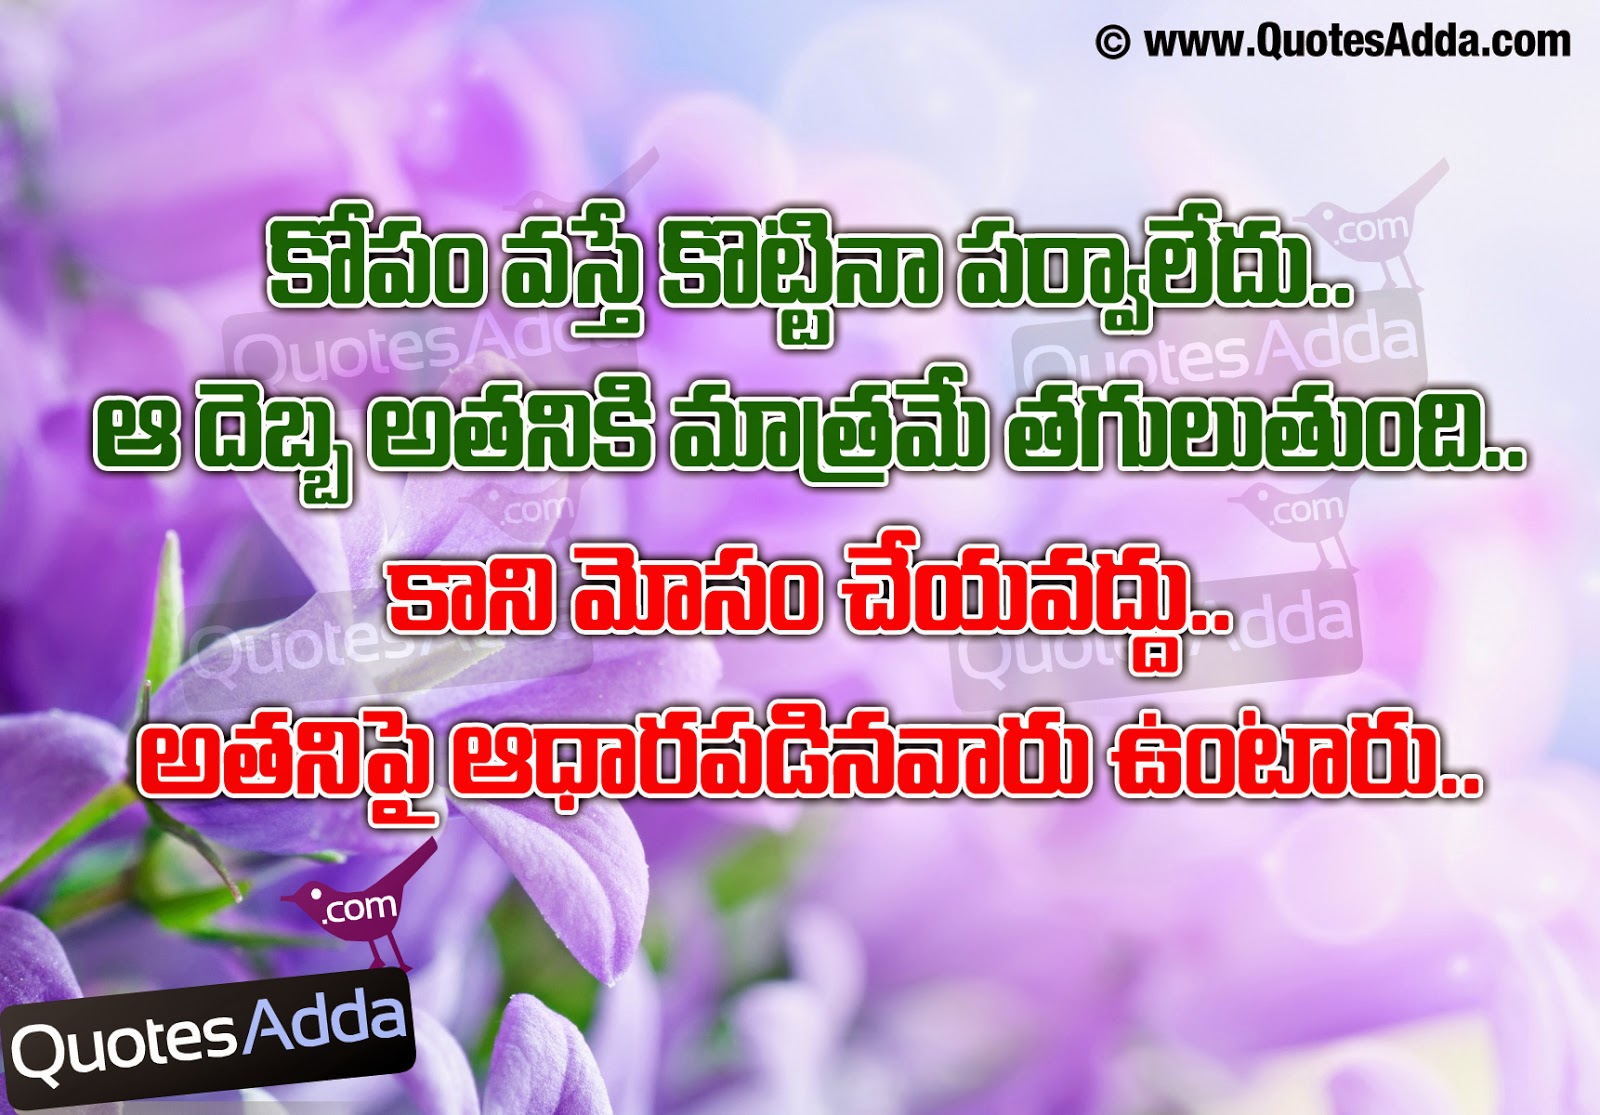 48 quotations in Telugu Language Love cheating Quotations in Telugu